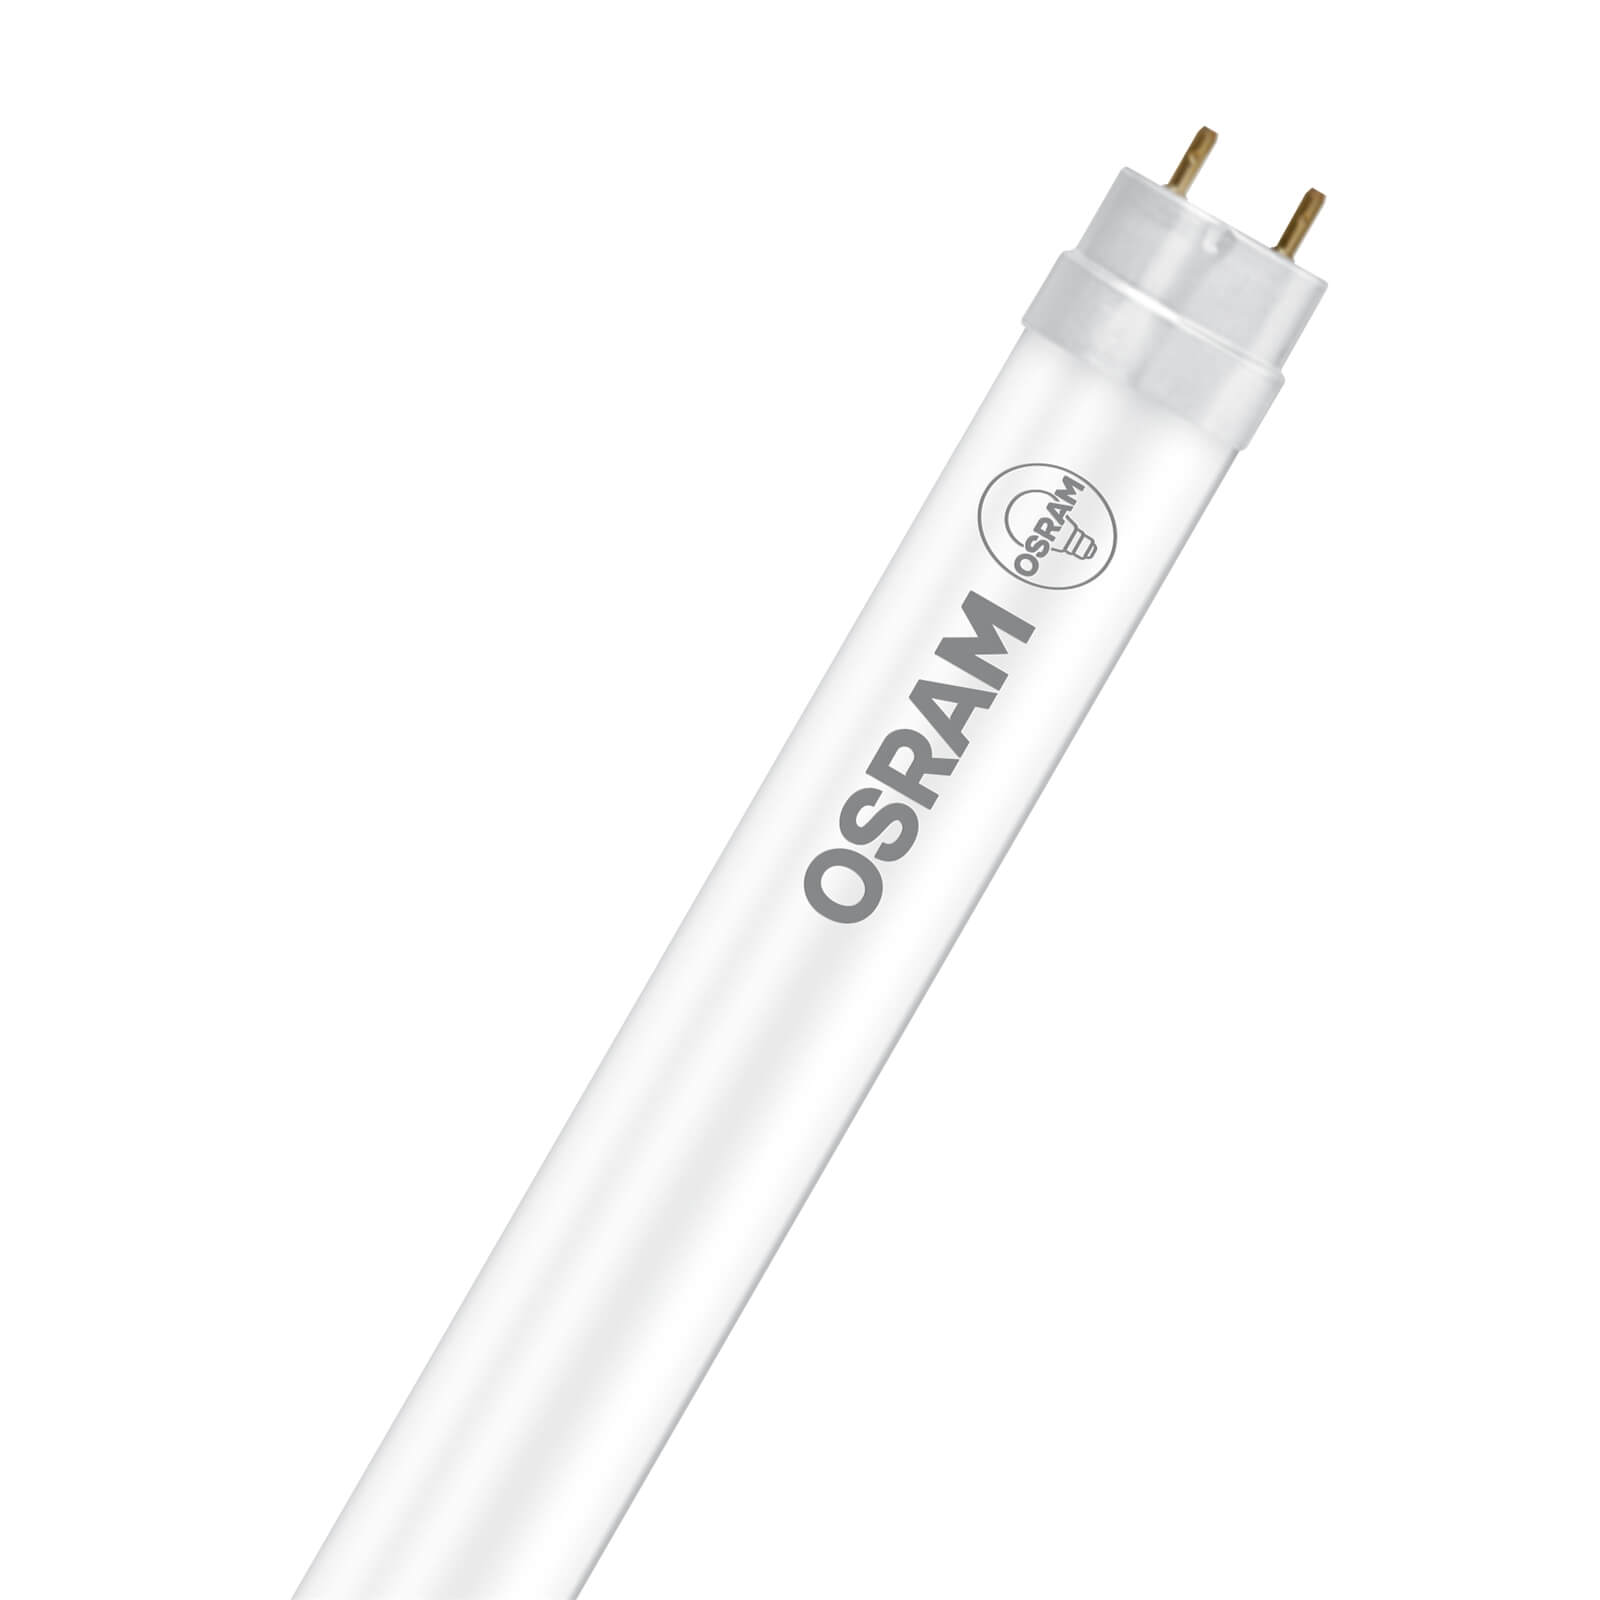 Osram LED Tube 1200mm 16.2W Cool White Light Bulb